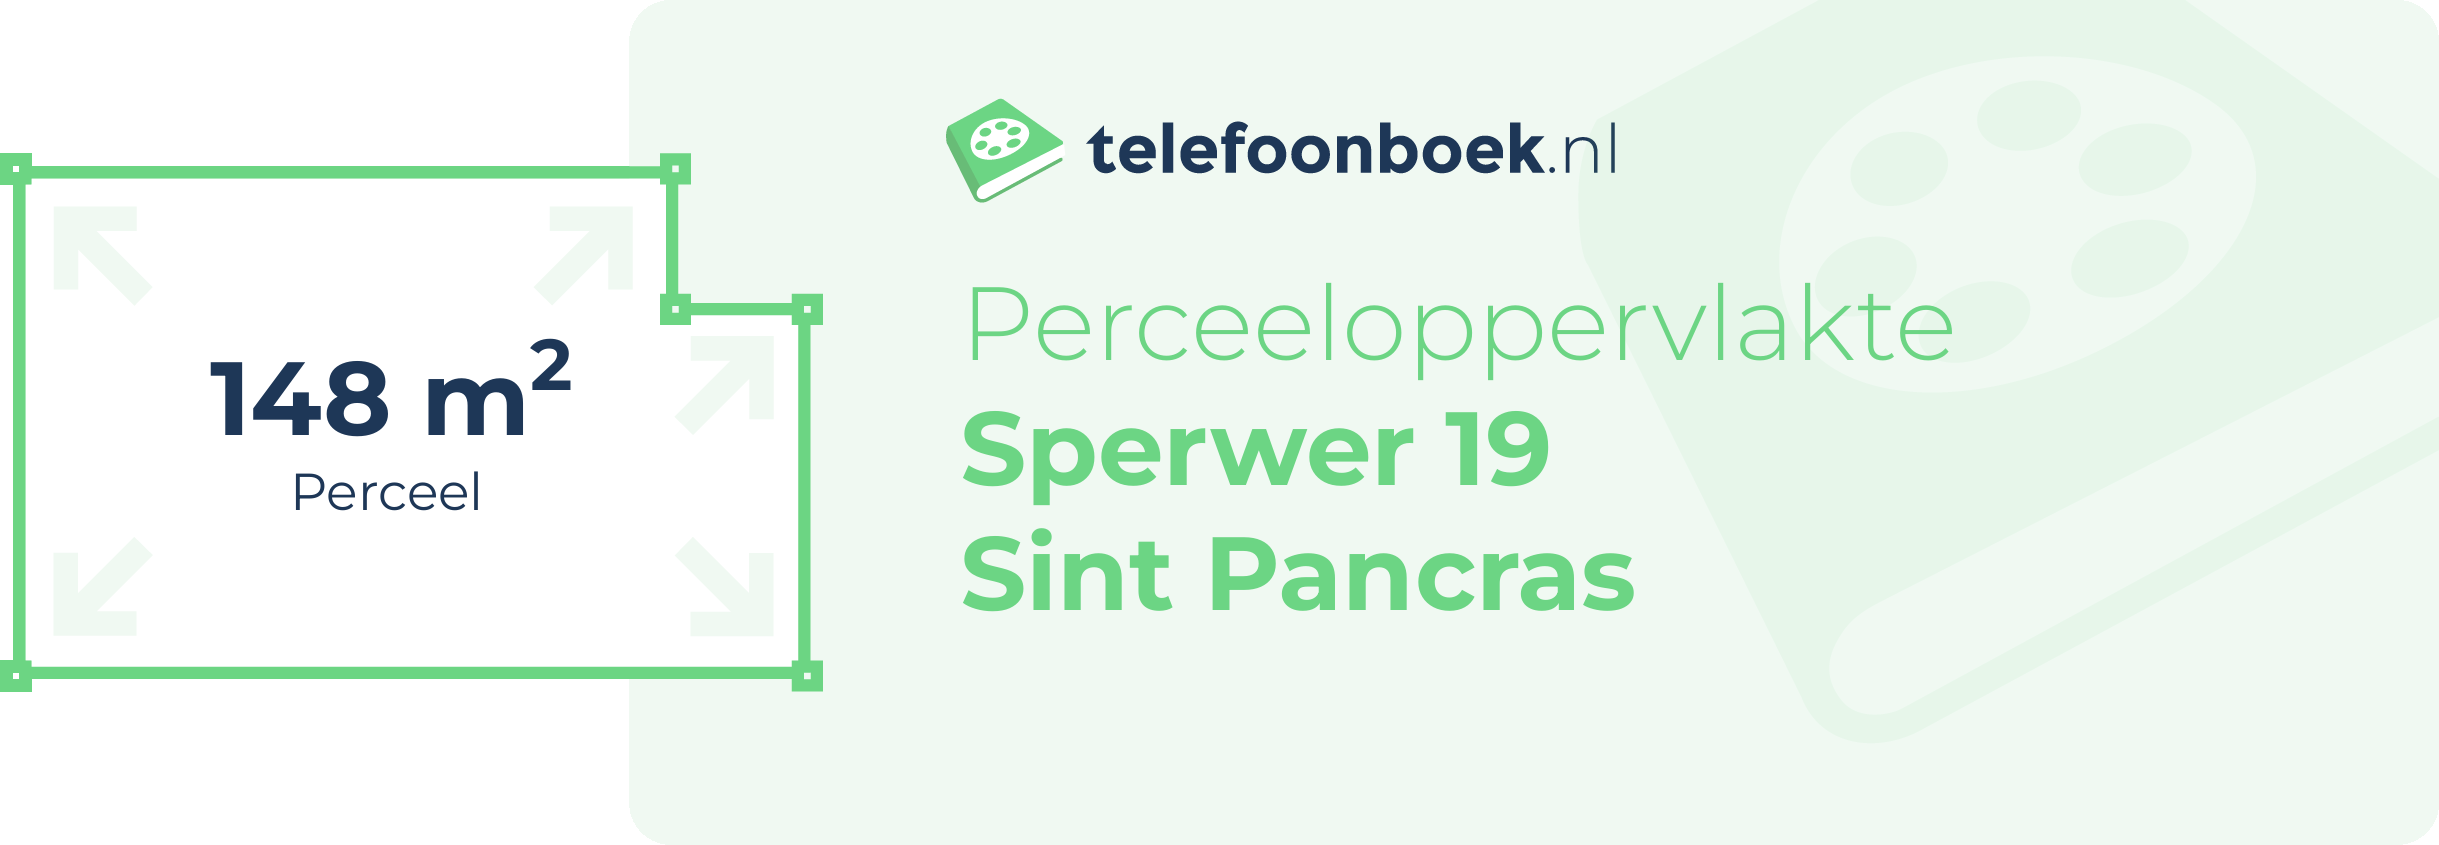 Perceeloppervlakte Sperwer 19 Sint Pancras